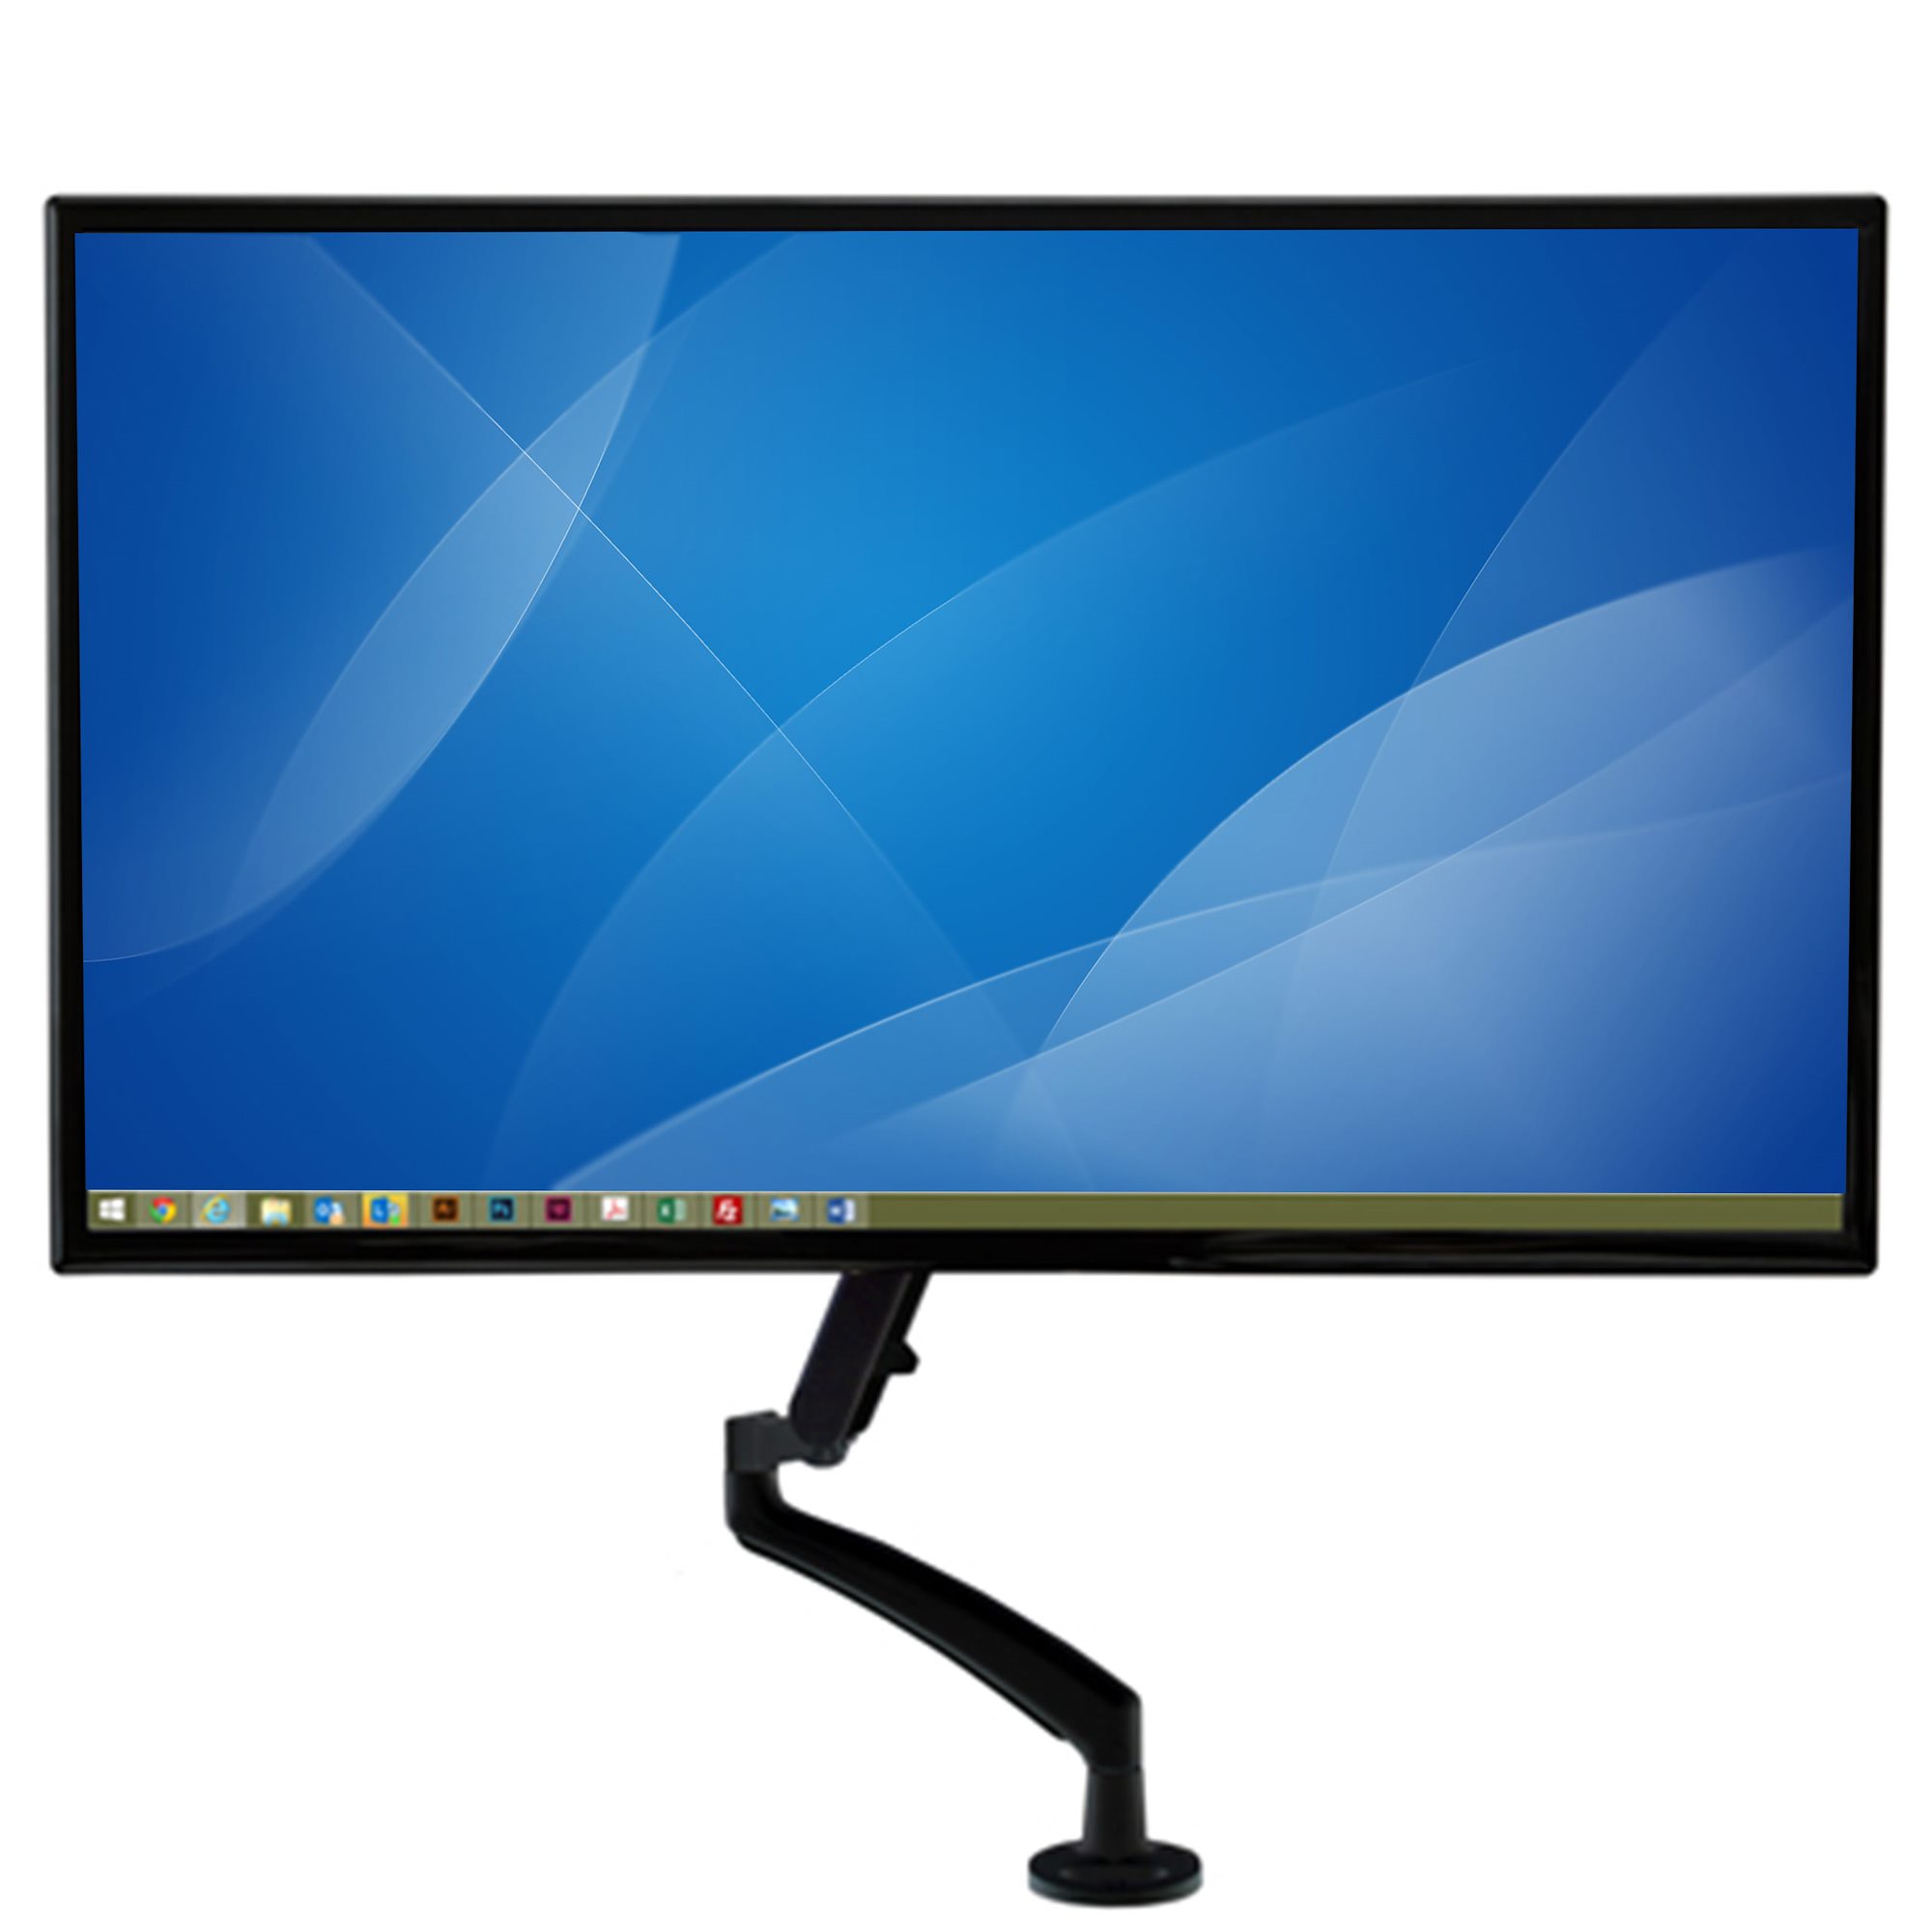 APPSMF02 soporte de mesa para cuatro monitores de 10p-27p brazos con 1 codo  y soportes orientables max. vesa 200x200 hasta 10kg por brazo